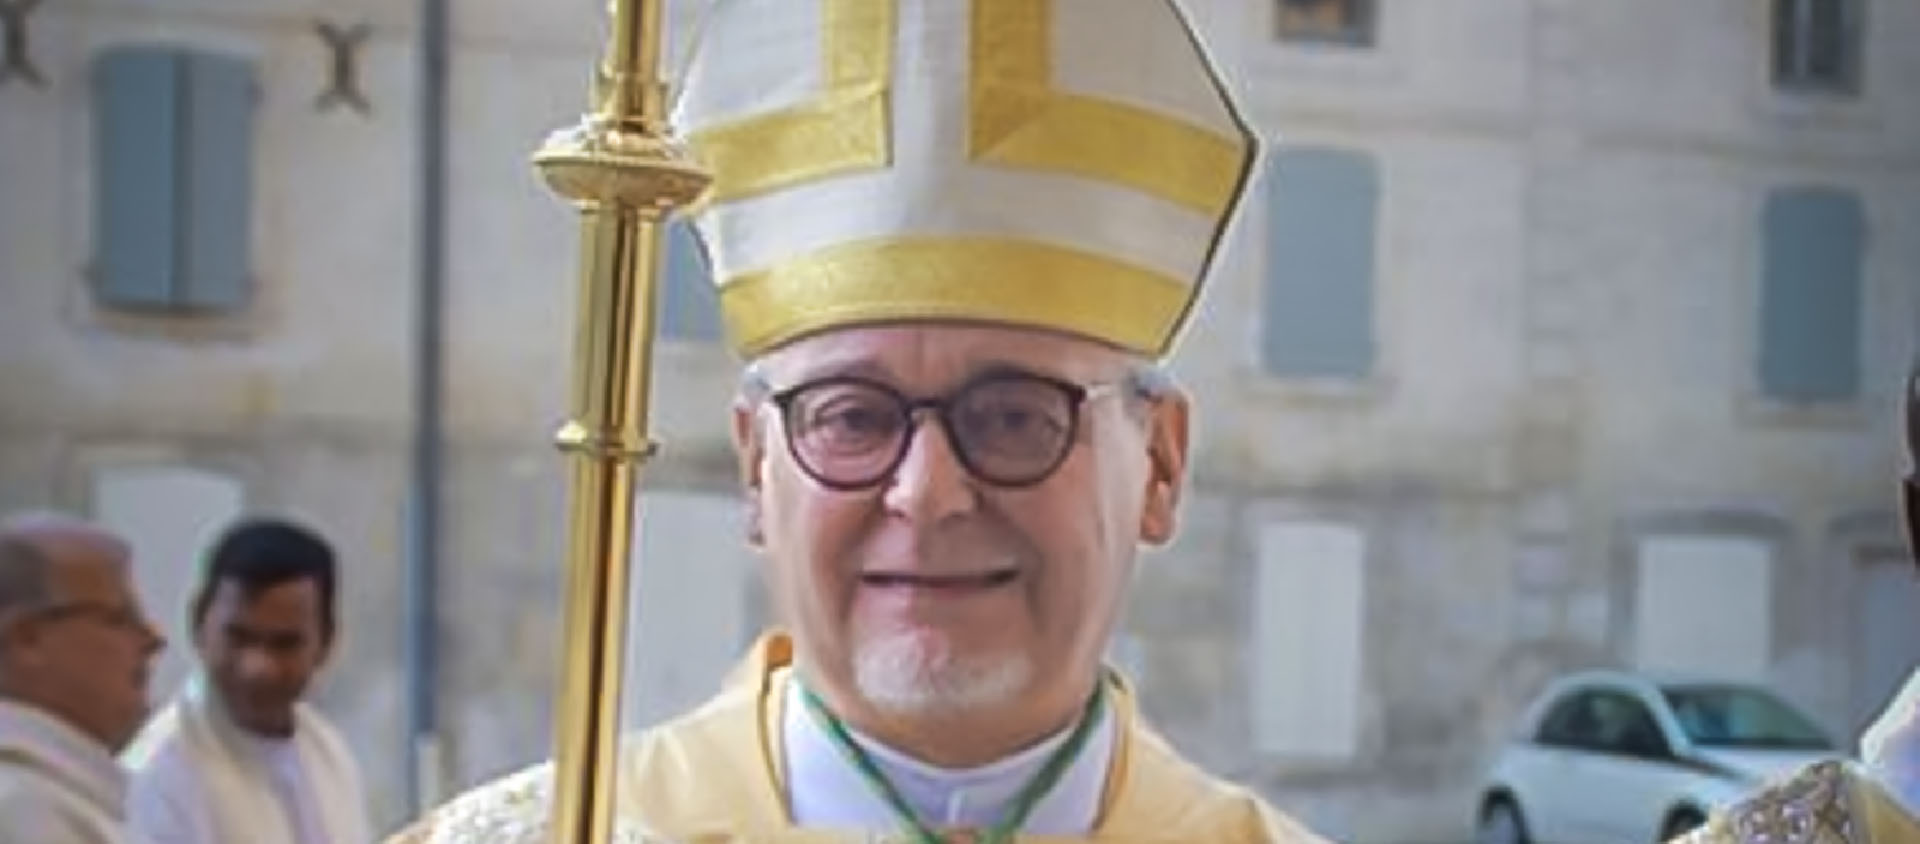 Mgr Geroges Collomb, évêque de La Rochelle, est mis en cause pour une agression sexuelle présumée | Diocèse de La Rochelle et Saintes